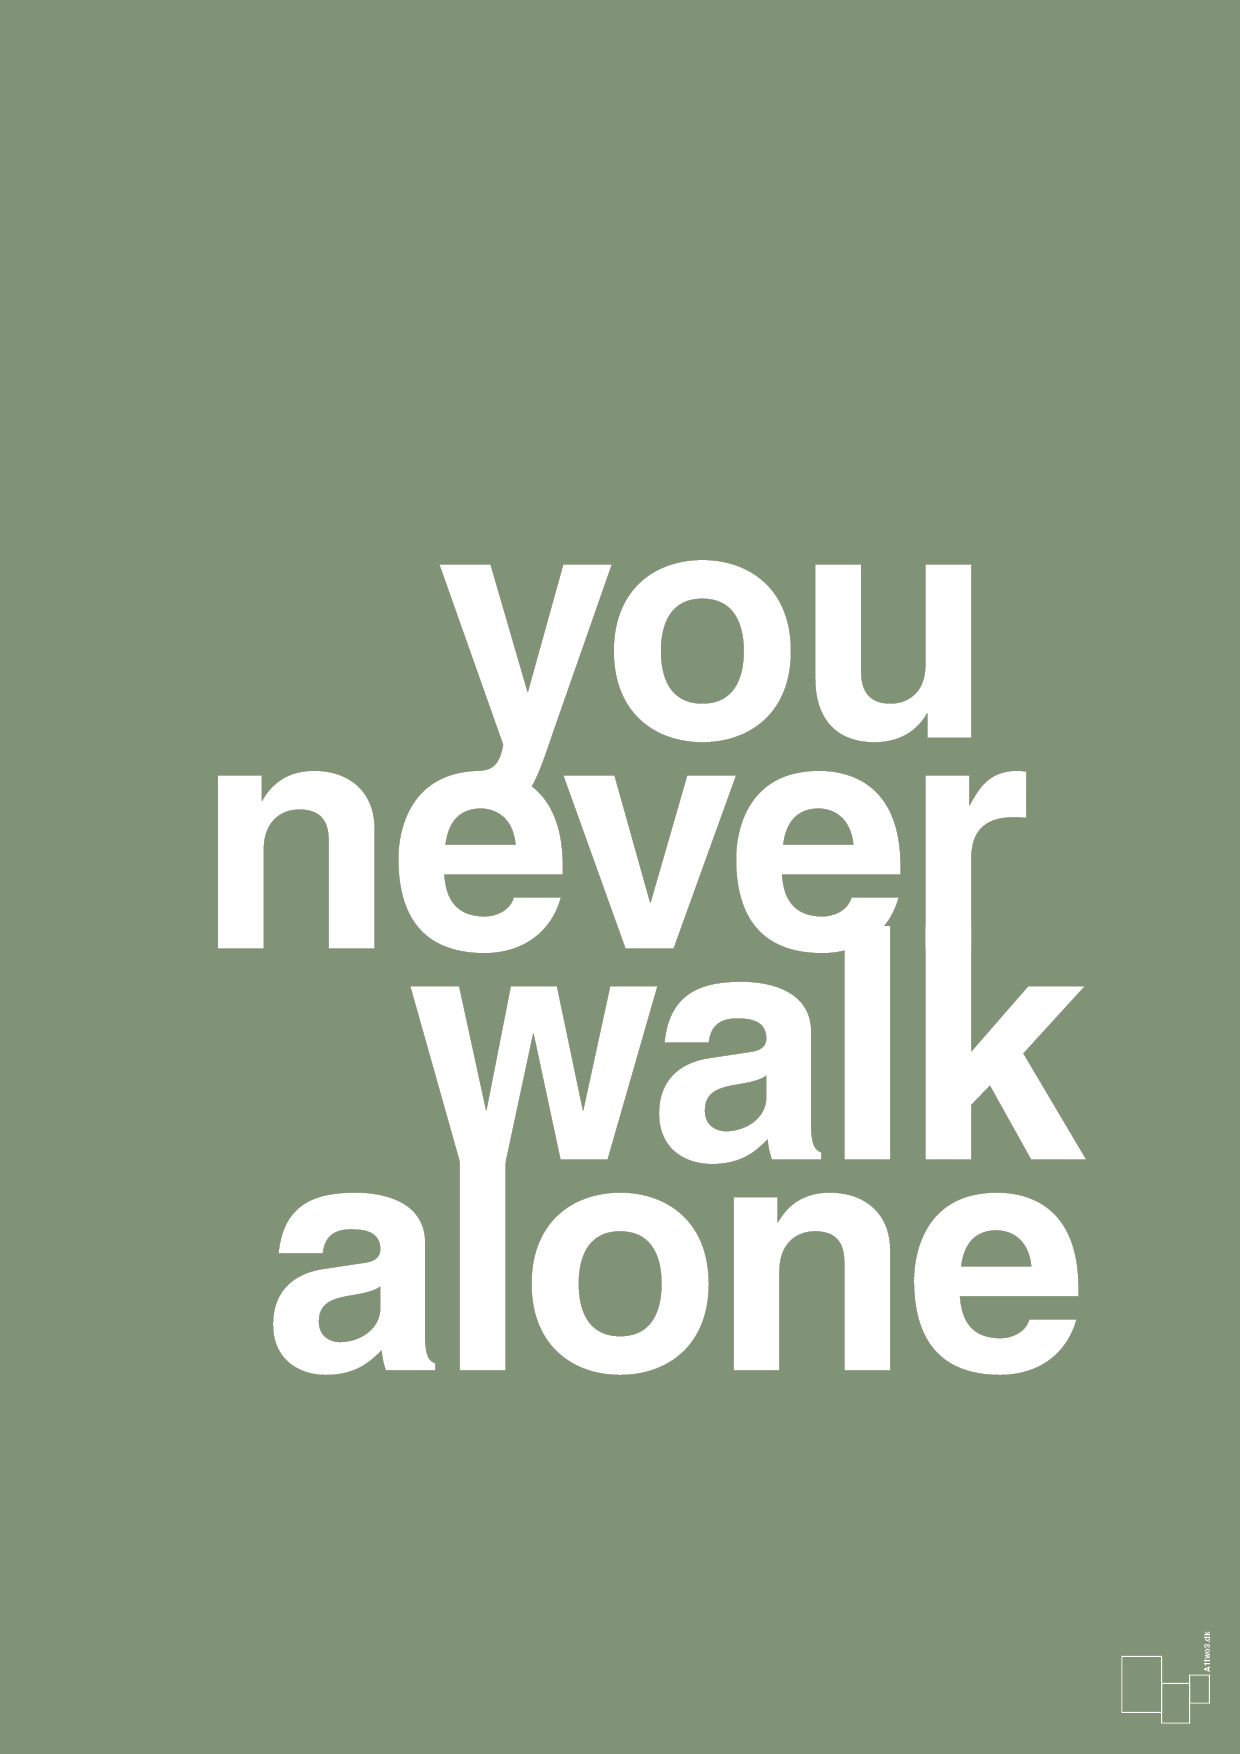 you never walk alone - Plakat med Ordsprog i Jade